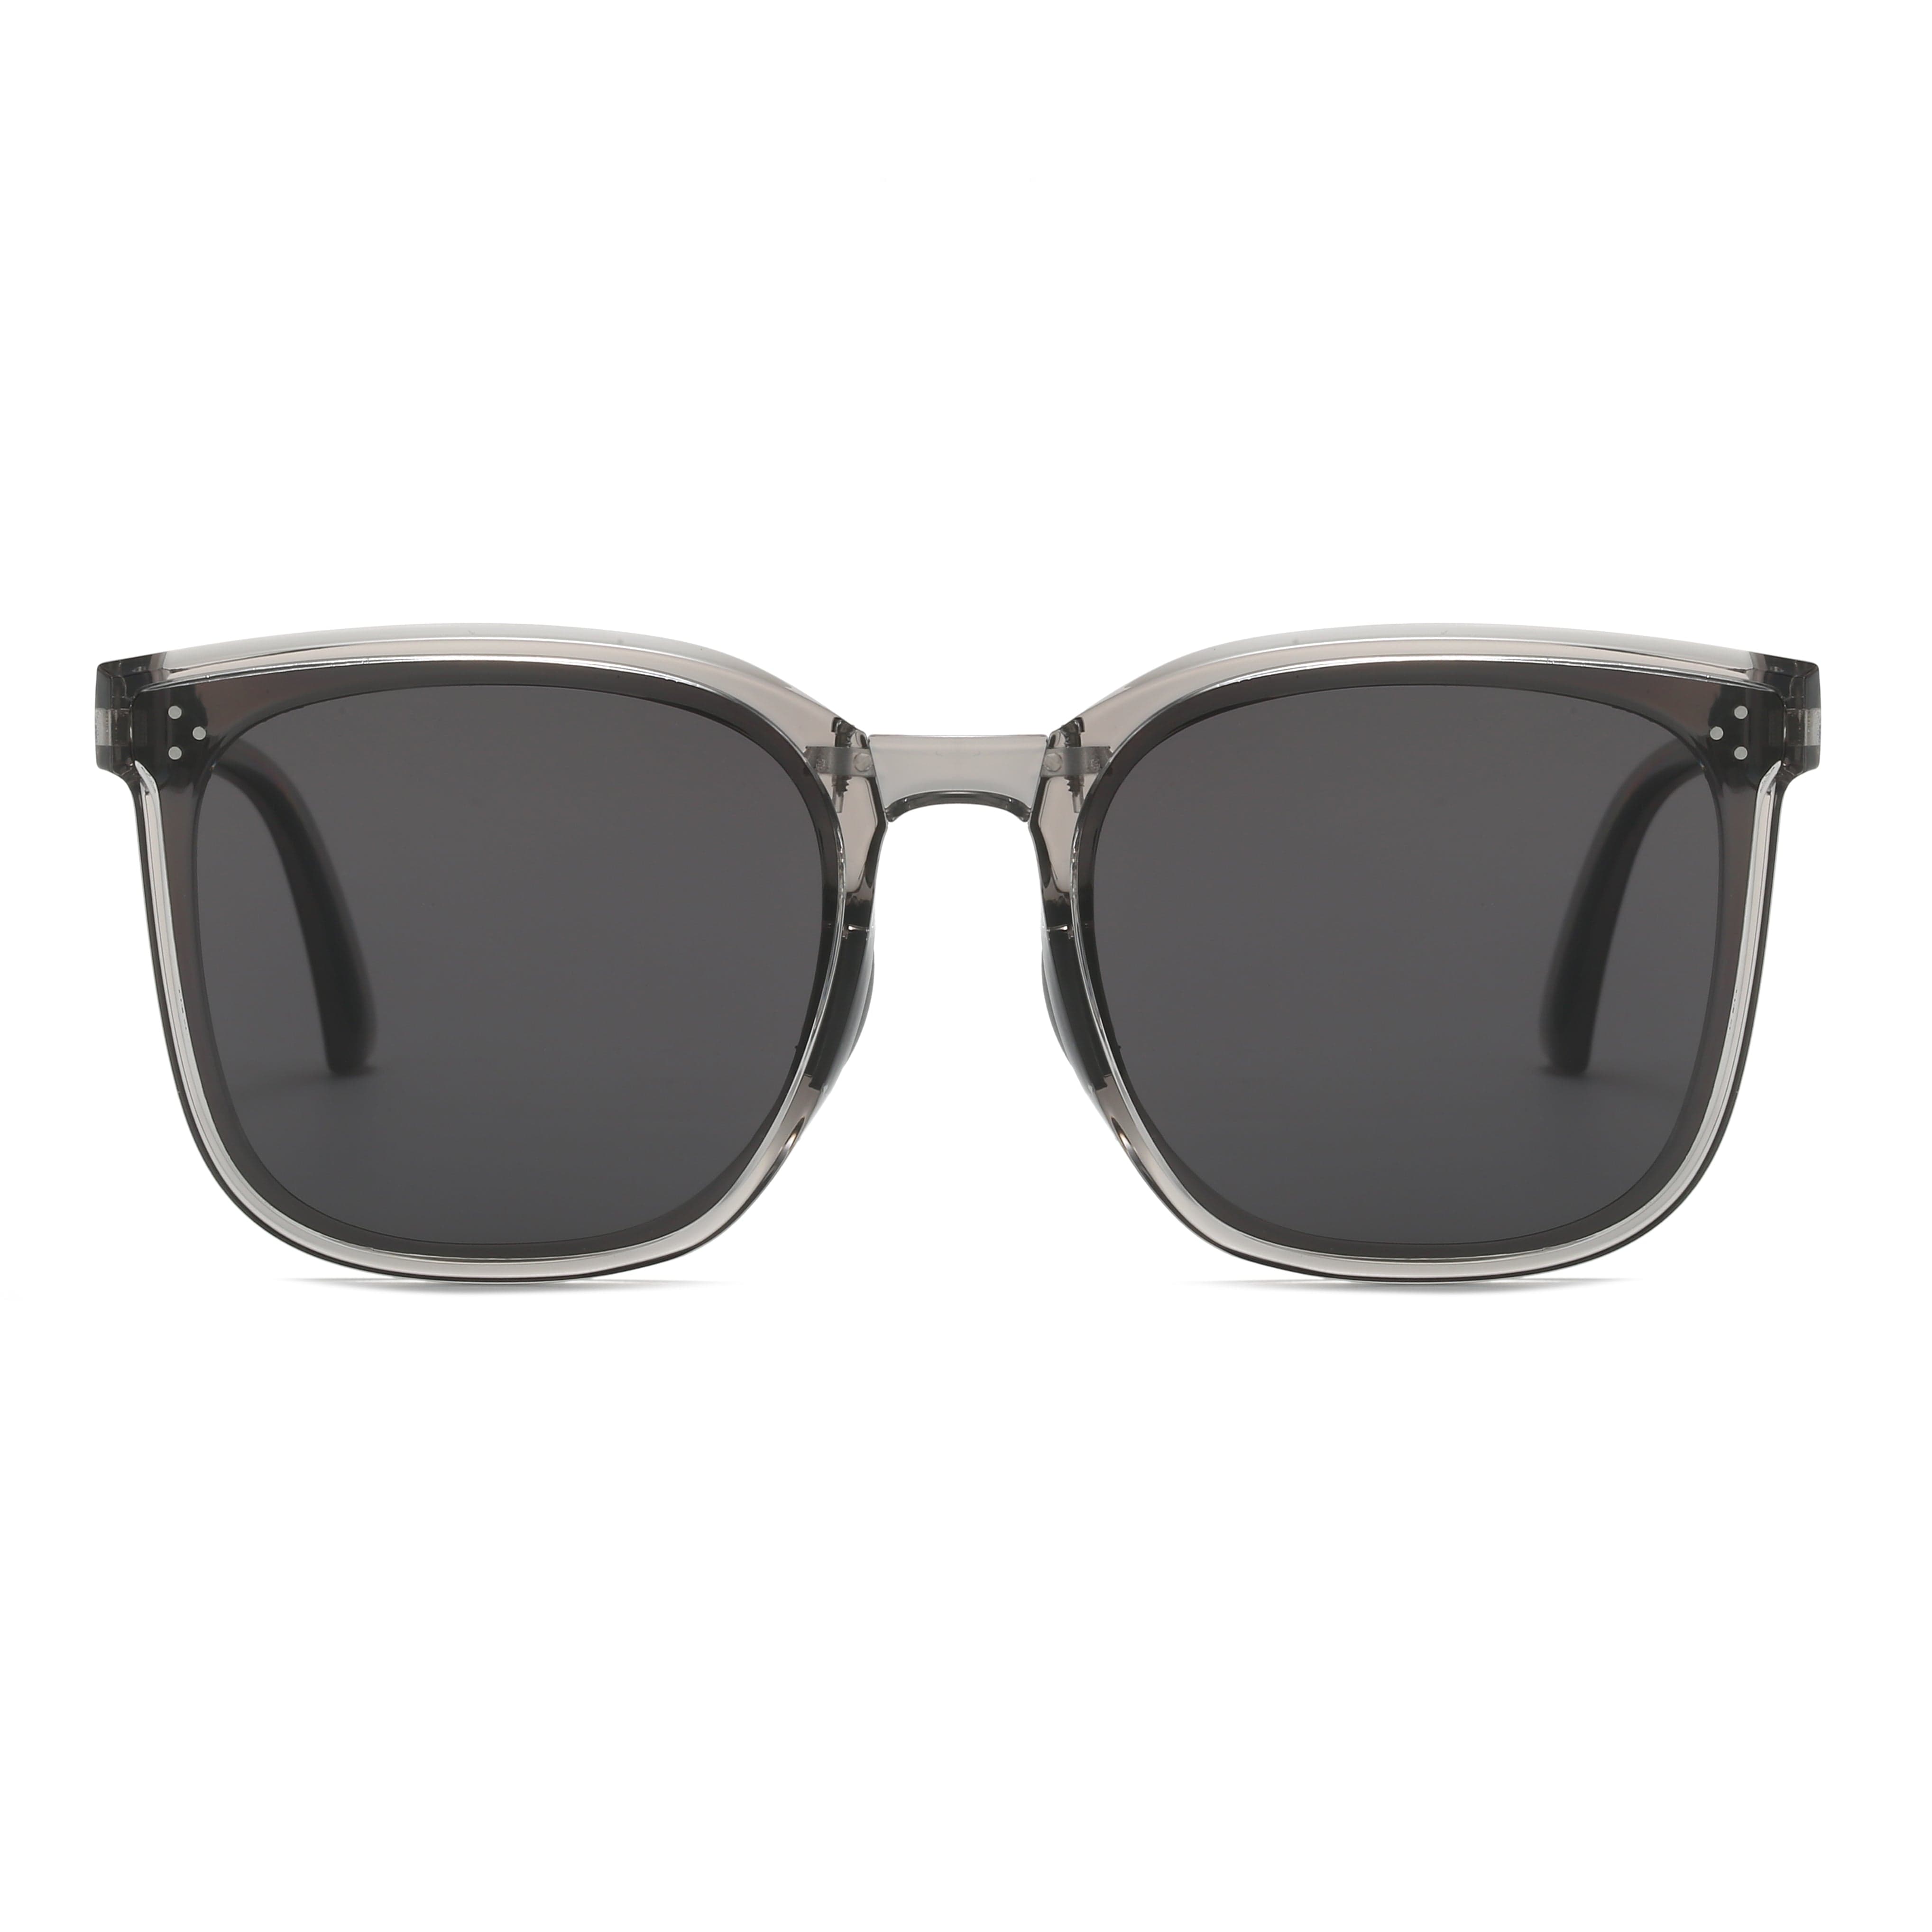 GIUSTIZIERI VECCHI Sunglasses Medium / Sea Glass Grey Sassy Chic Cinque